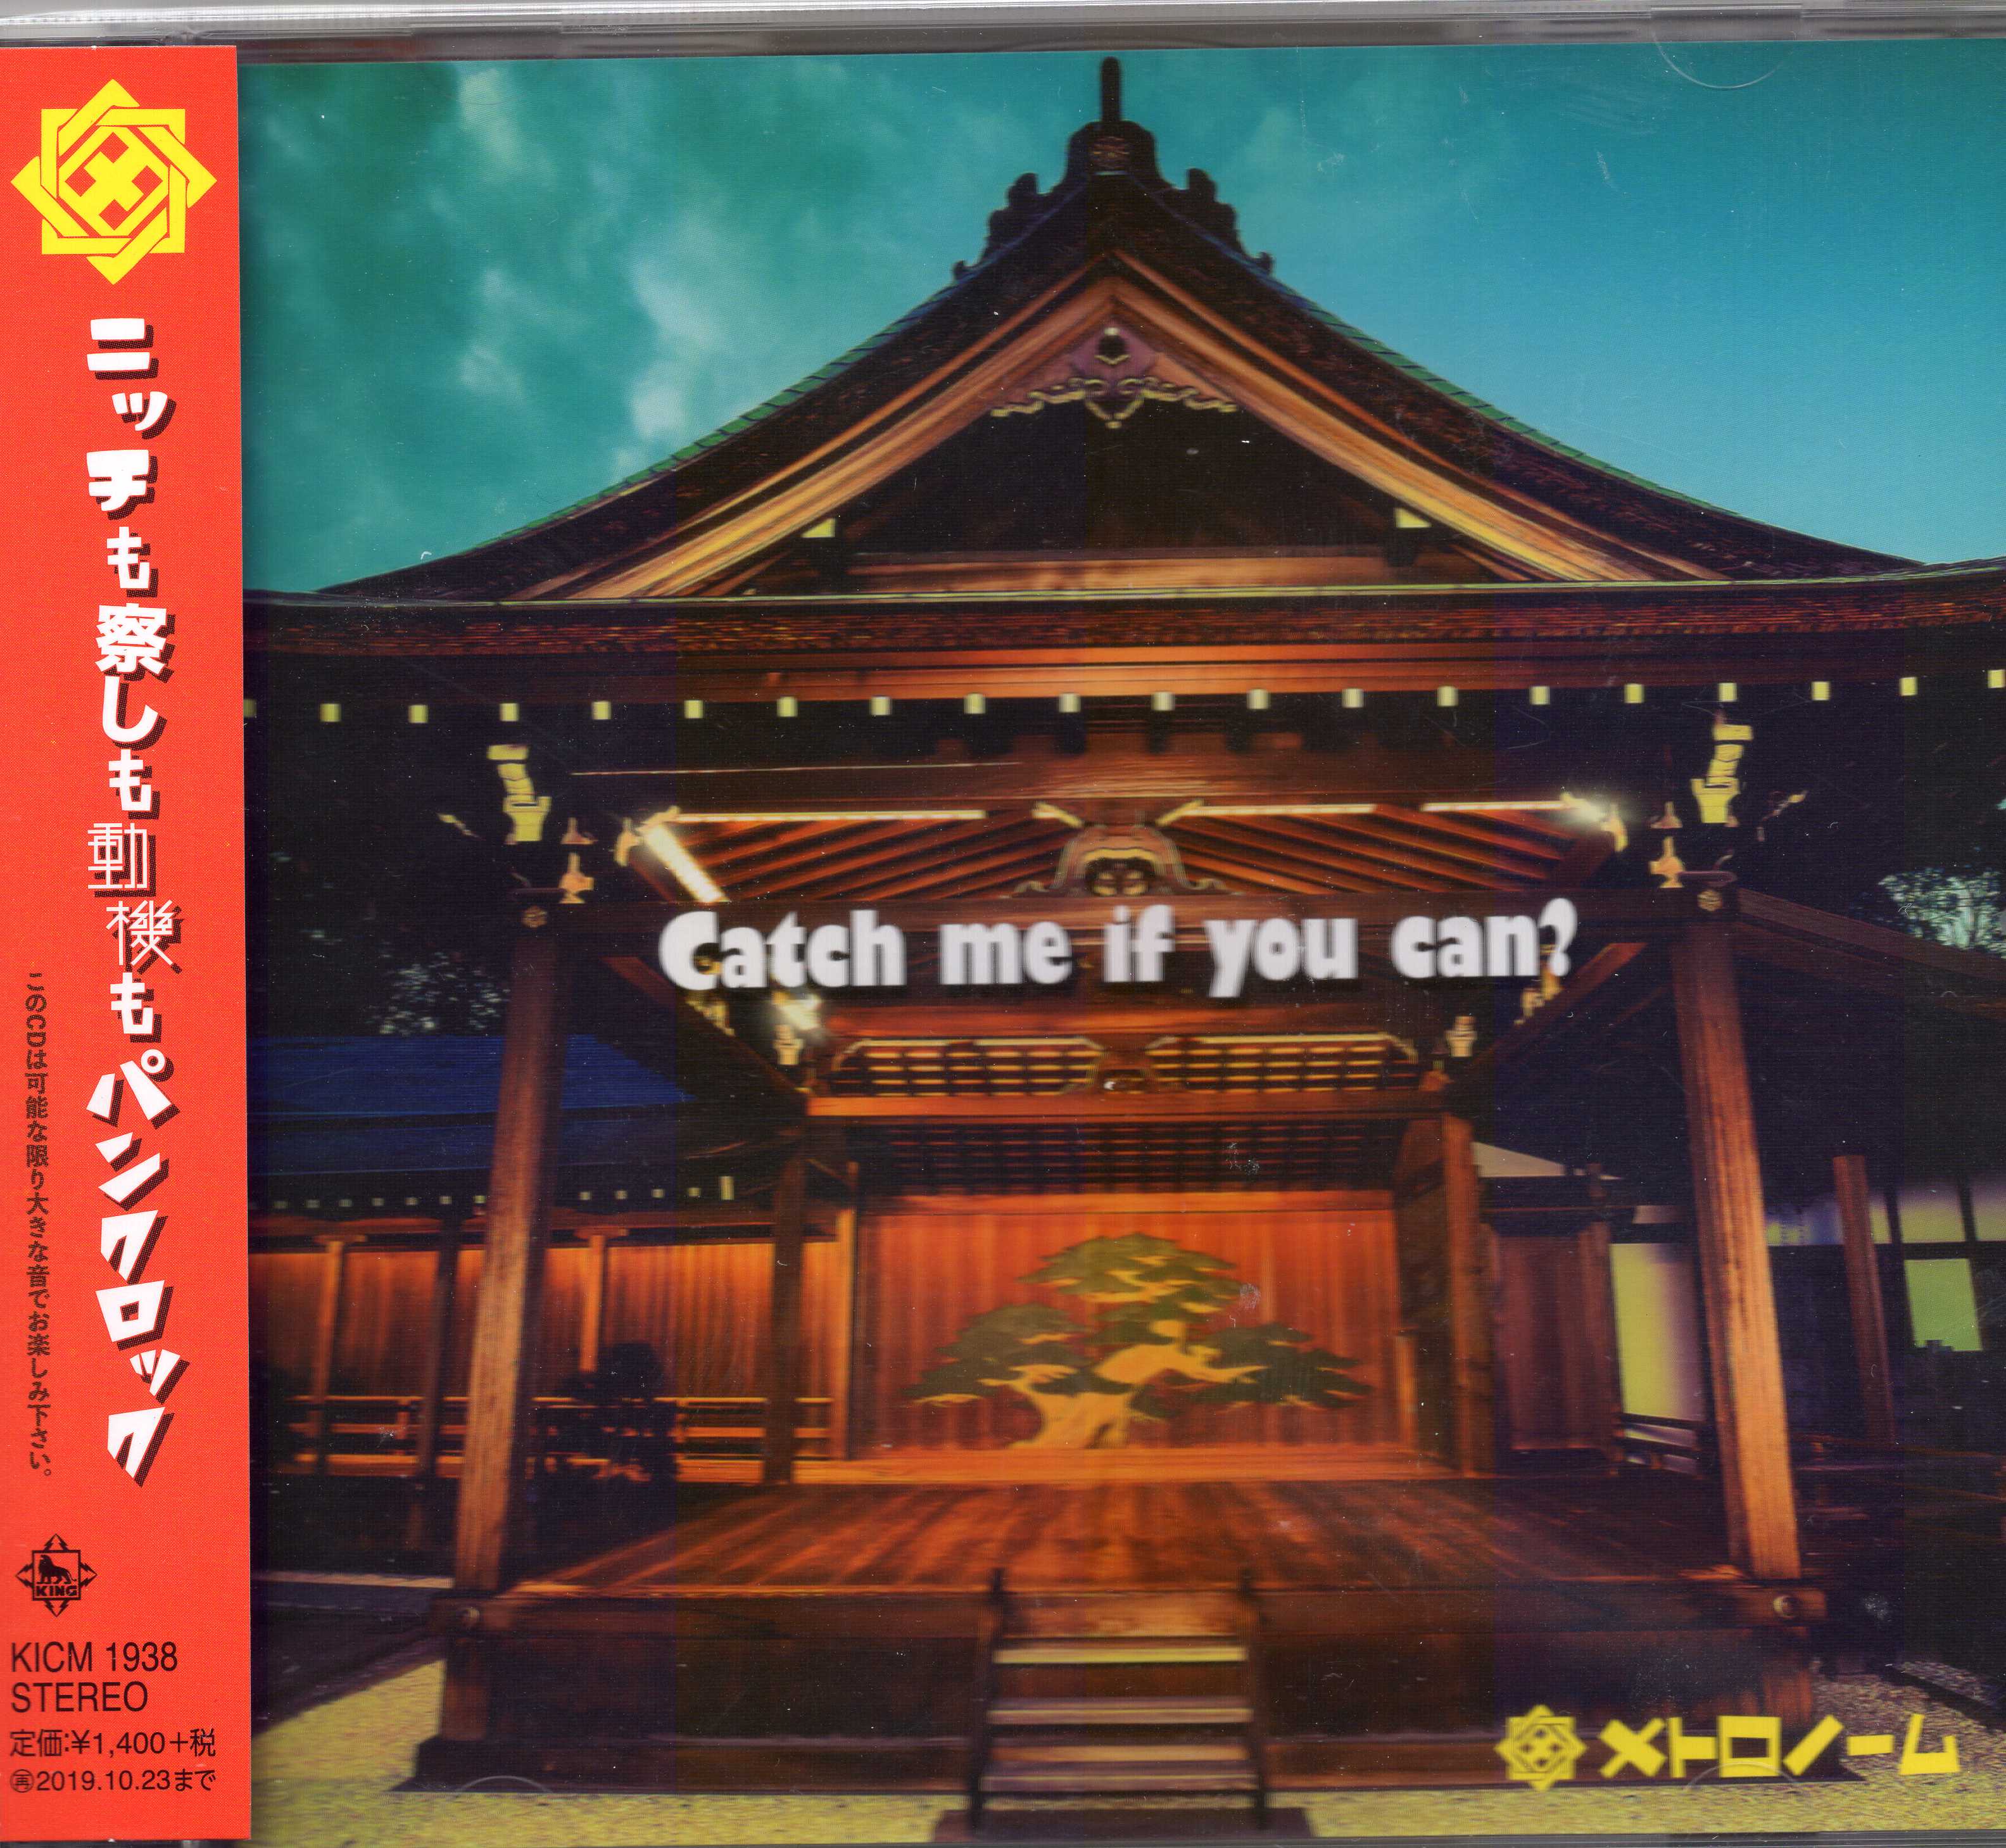 メトロノーム ( メトロノーム )  の CD Catch me if you can?